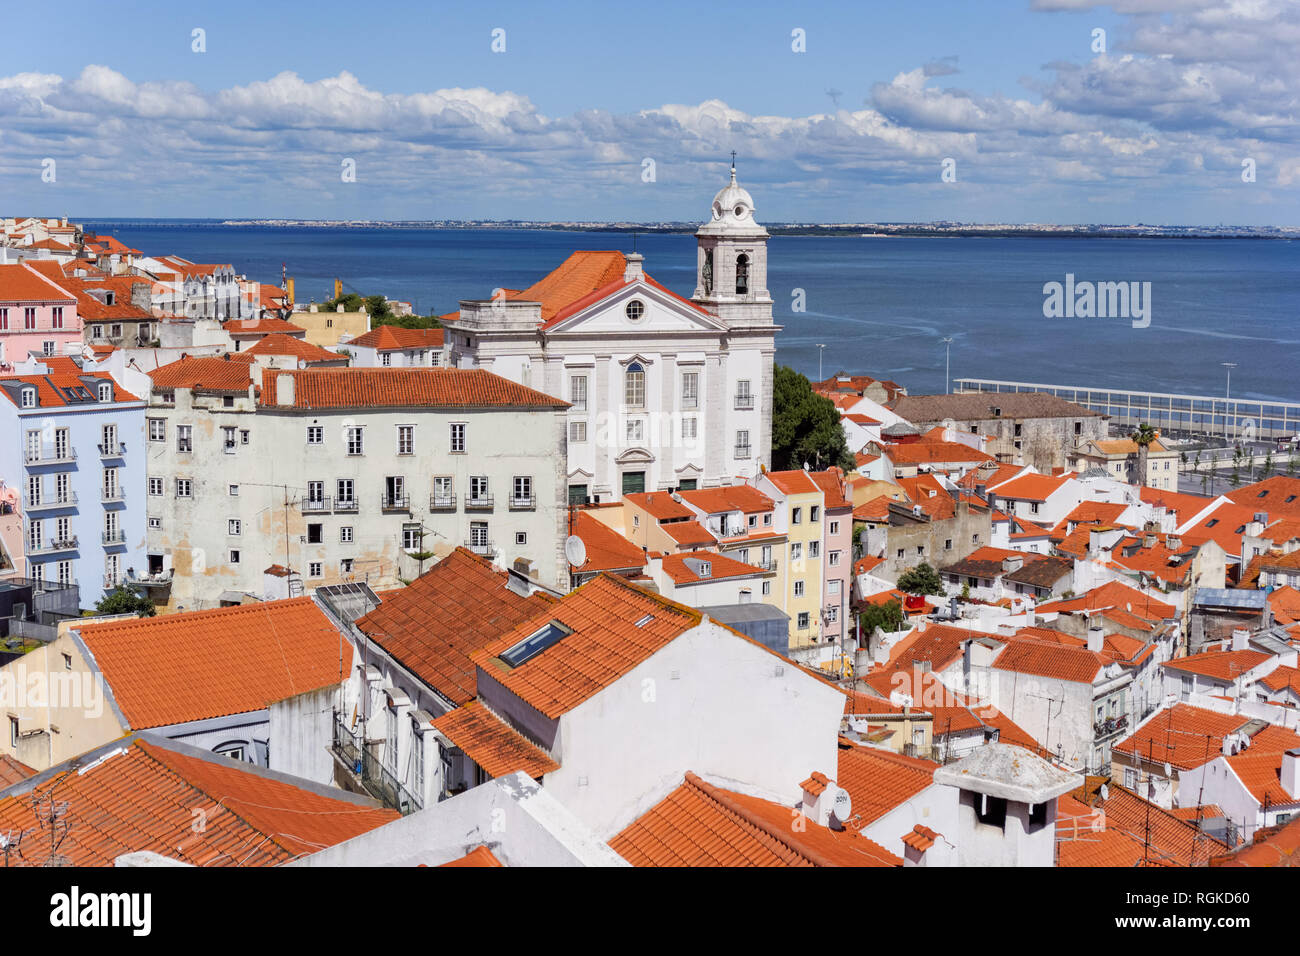 Lisbona, Portogallo, vista del quartiere di Alfama e il fiume Tago Foto Stock